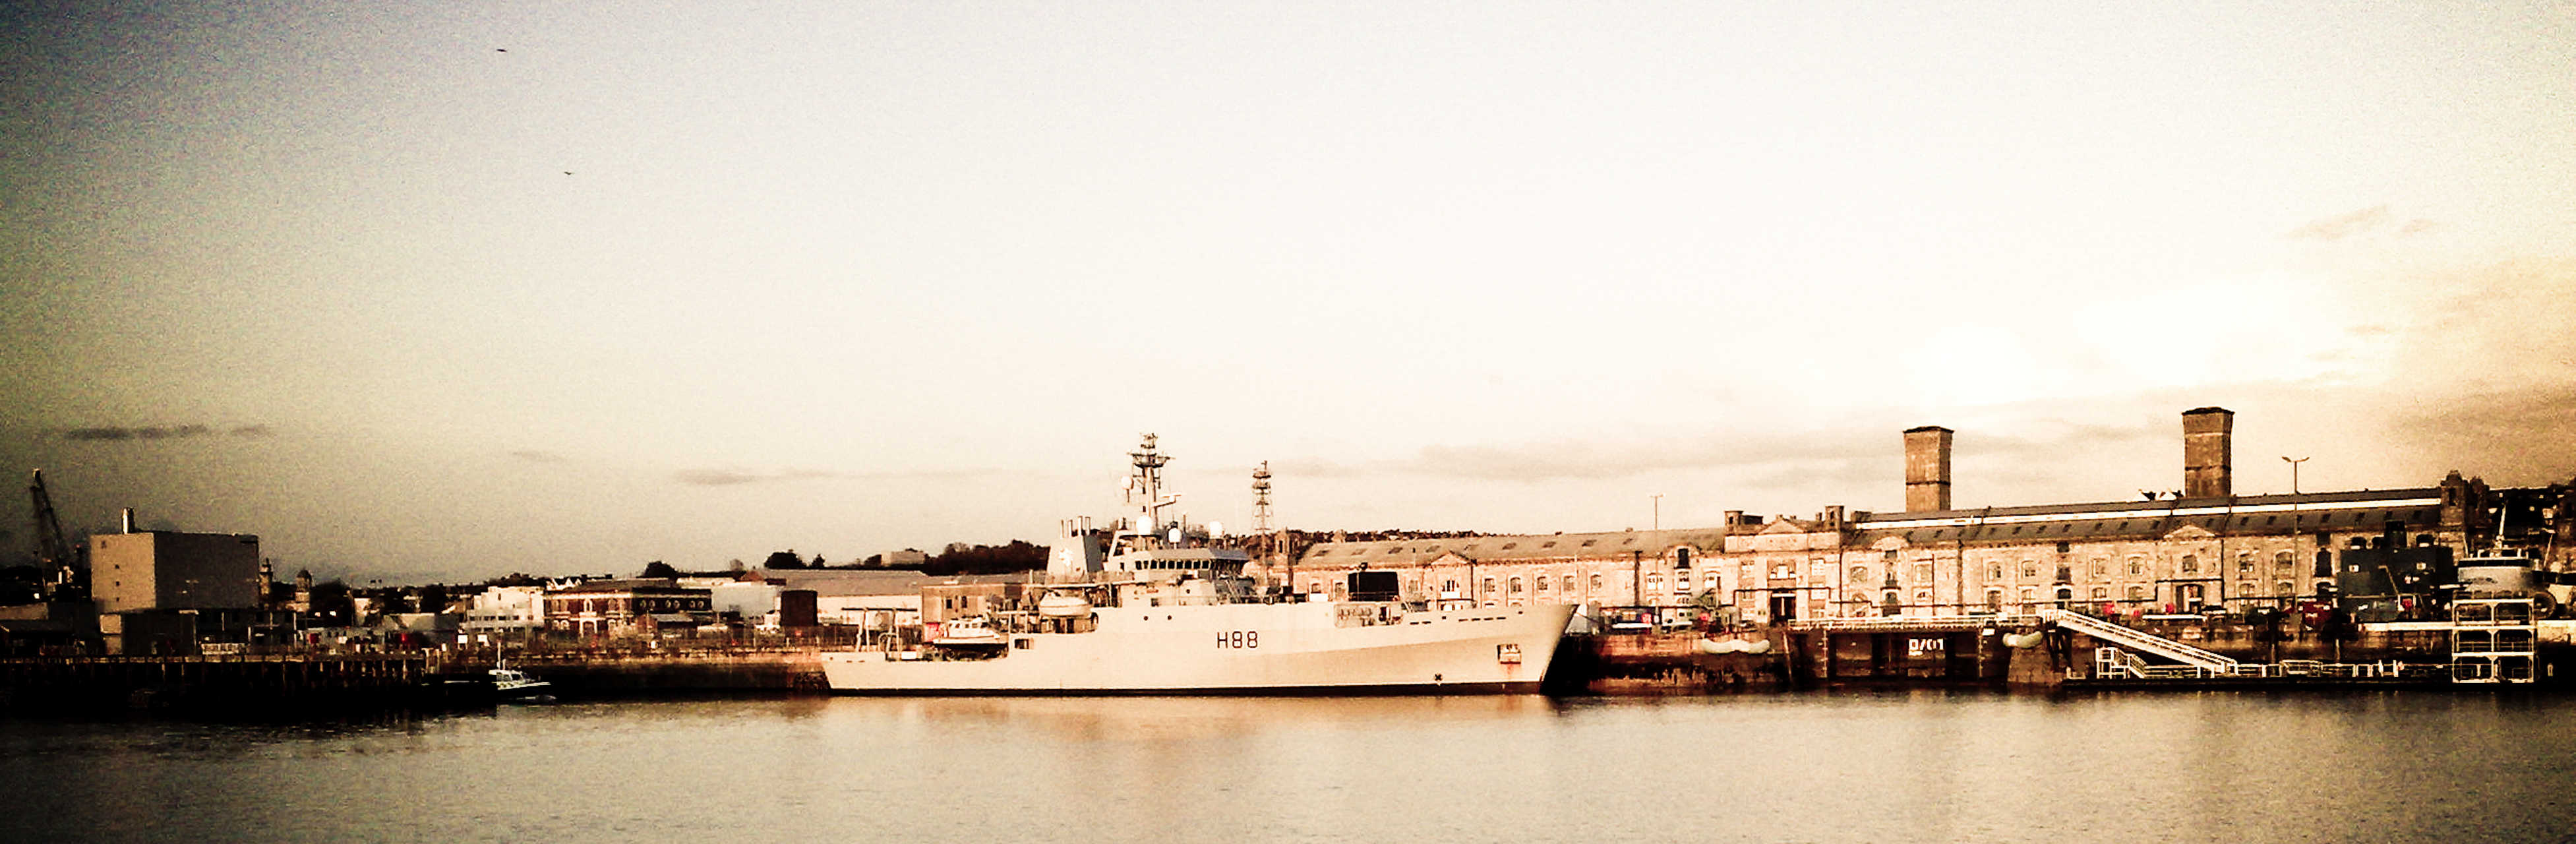 The Royal Navy's HMS Enterprise